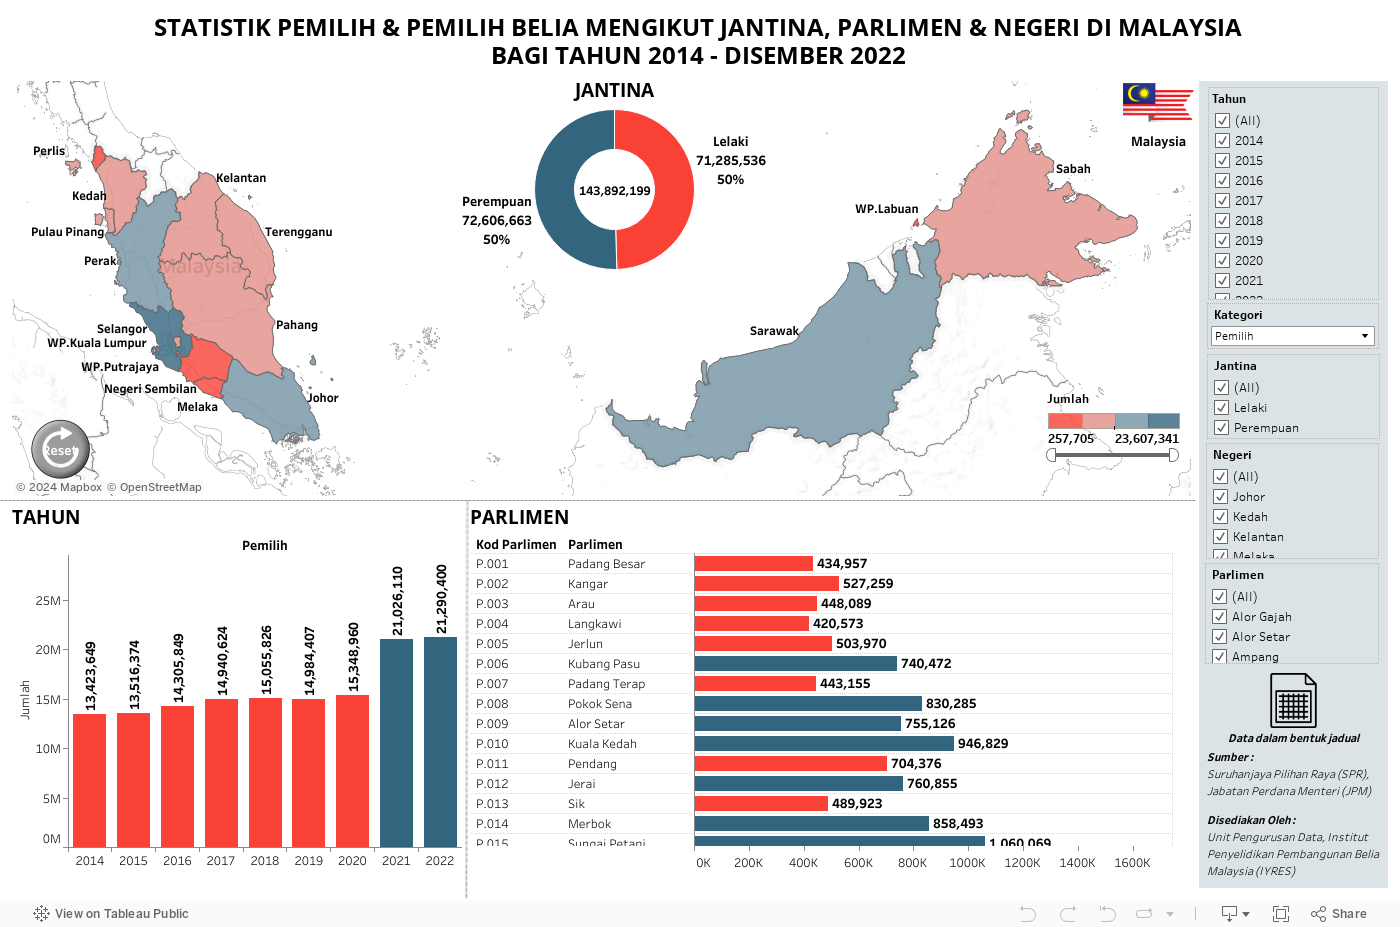 STATISTIK PEMILIH & PEMILIH BELIA MALAYSIA MENGIKUT JANTINA, PARLIMEN & NEGERI DI MALAYSIABAGI TAHUN 2014 - DISEMBER 2022 